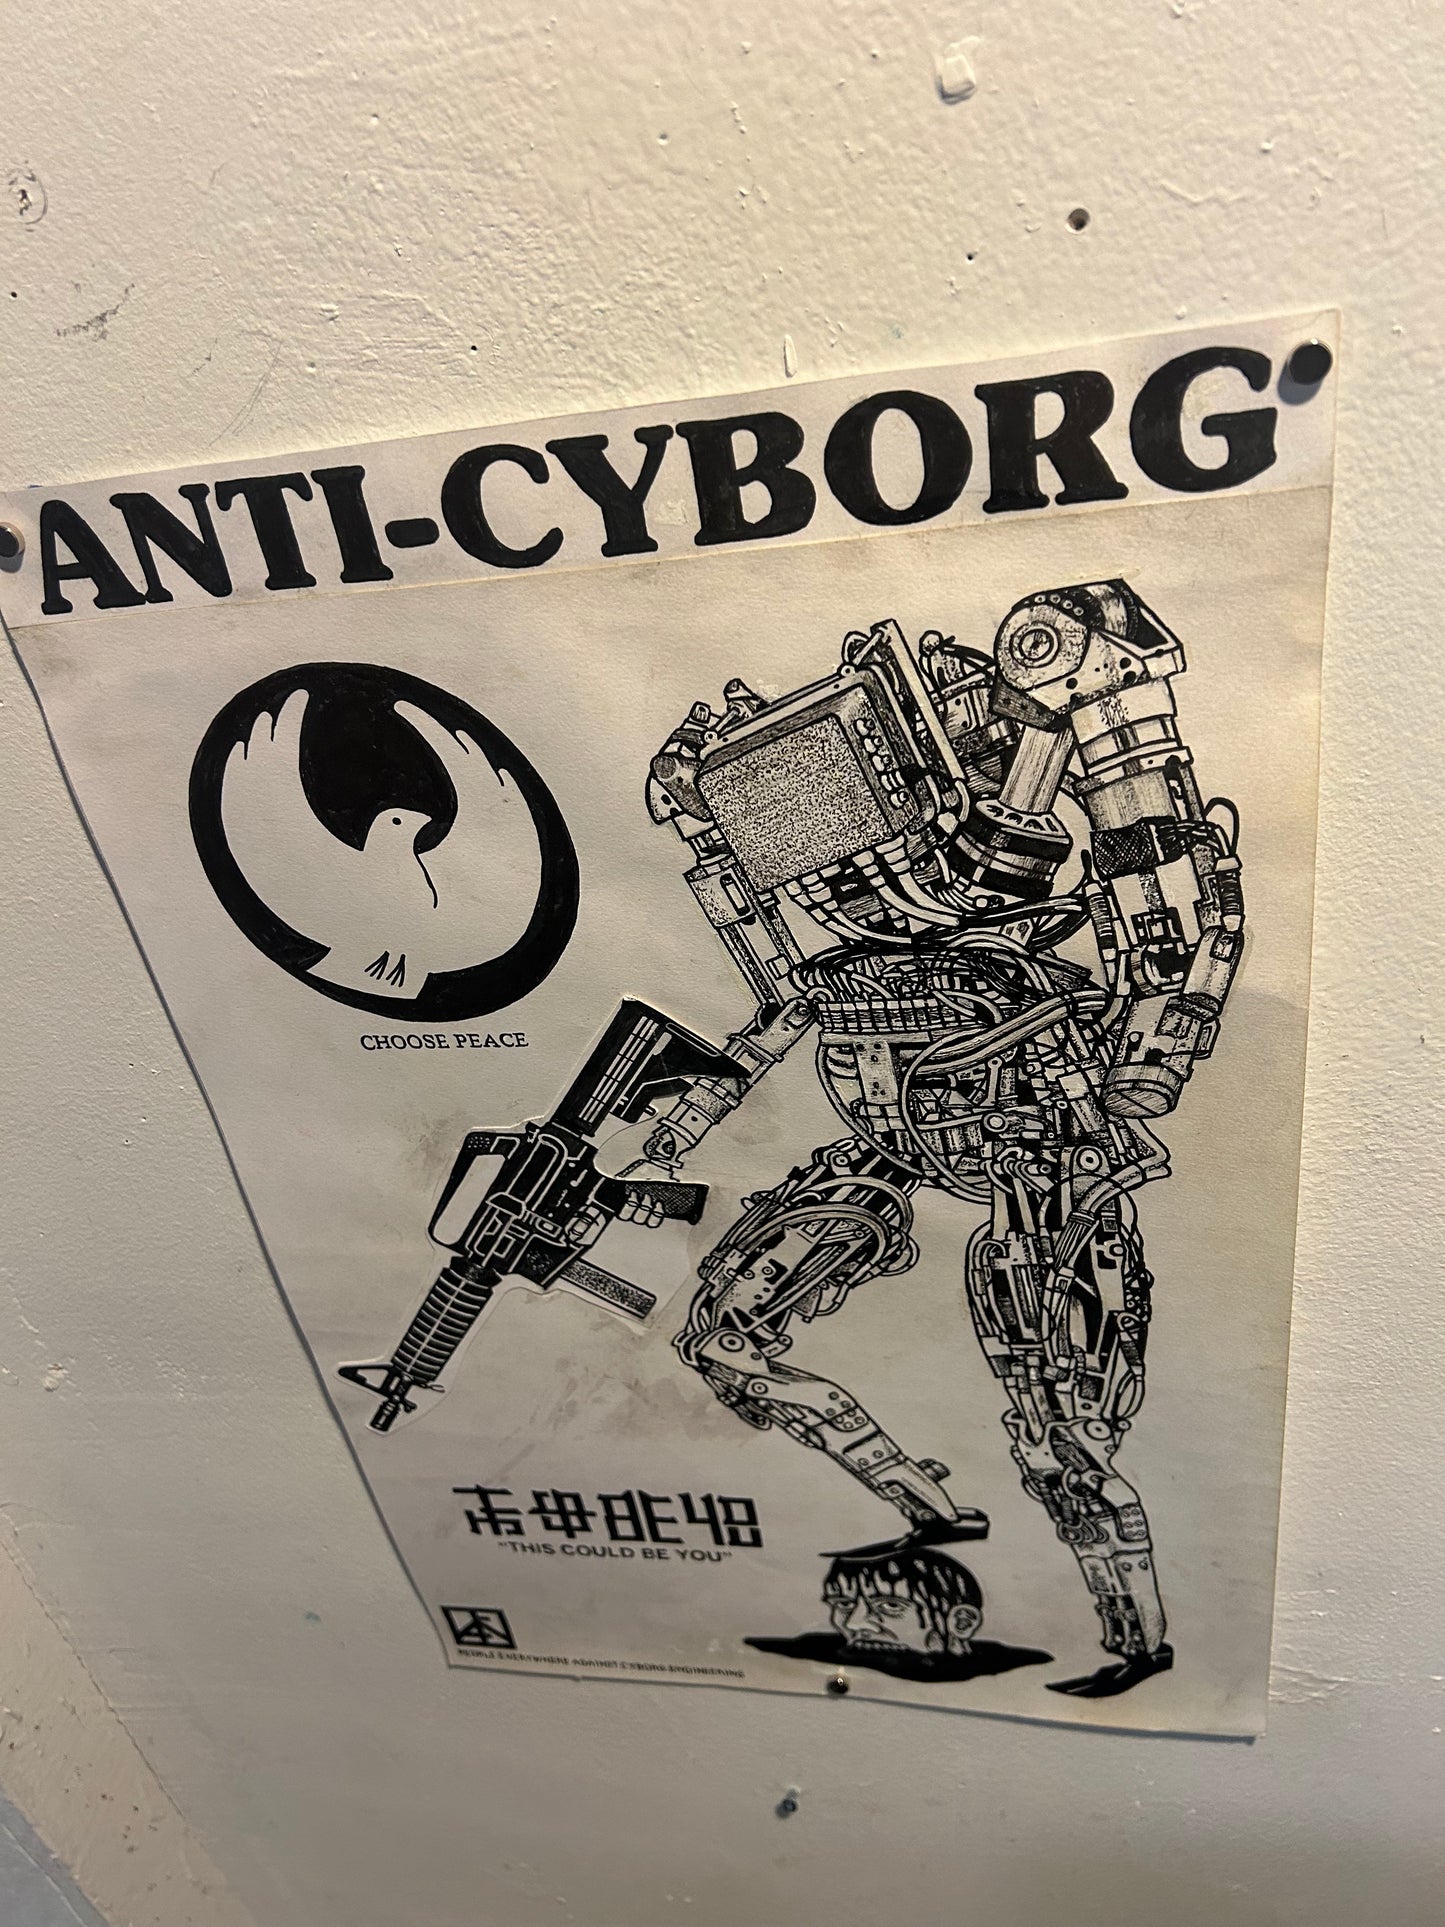 Death/Traitors "Anti Cyborg"